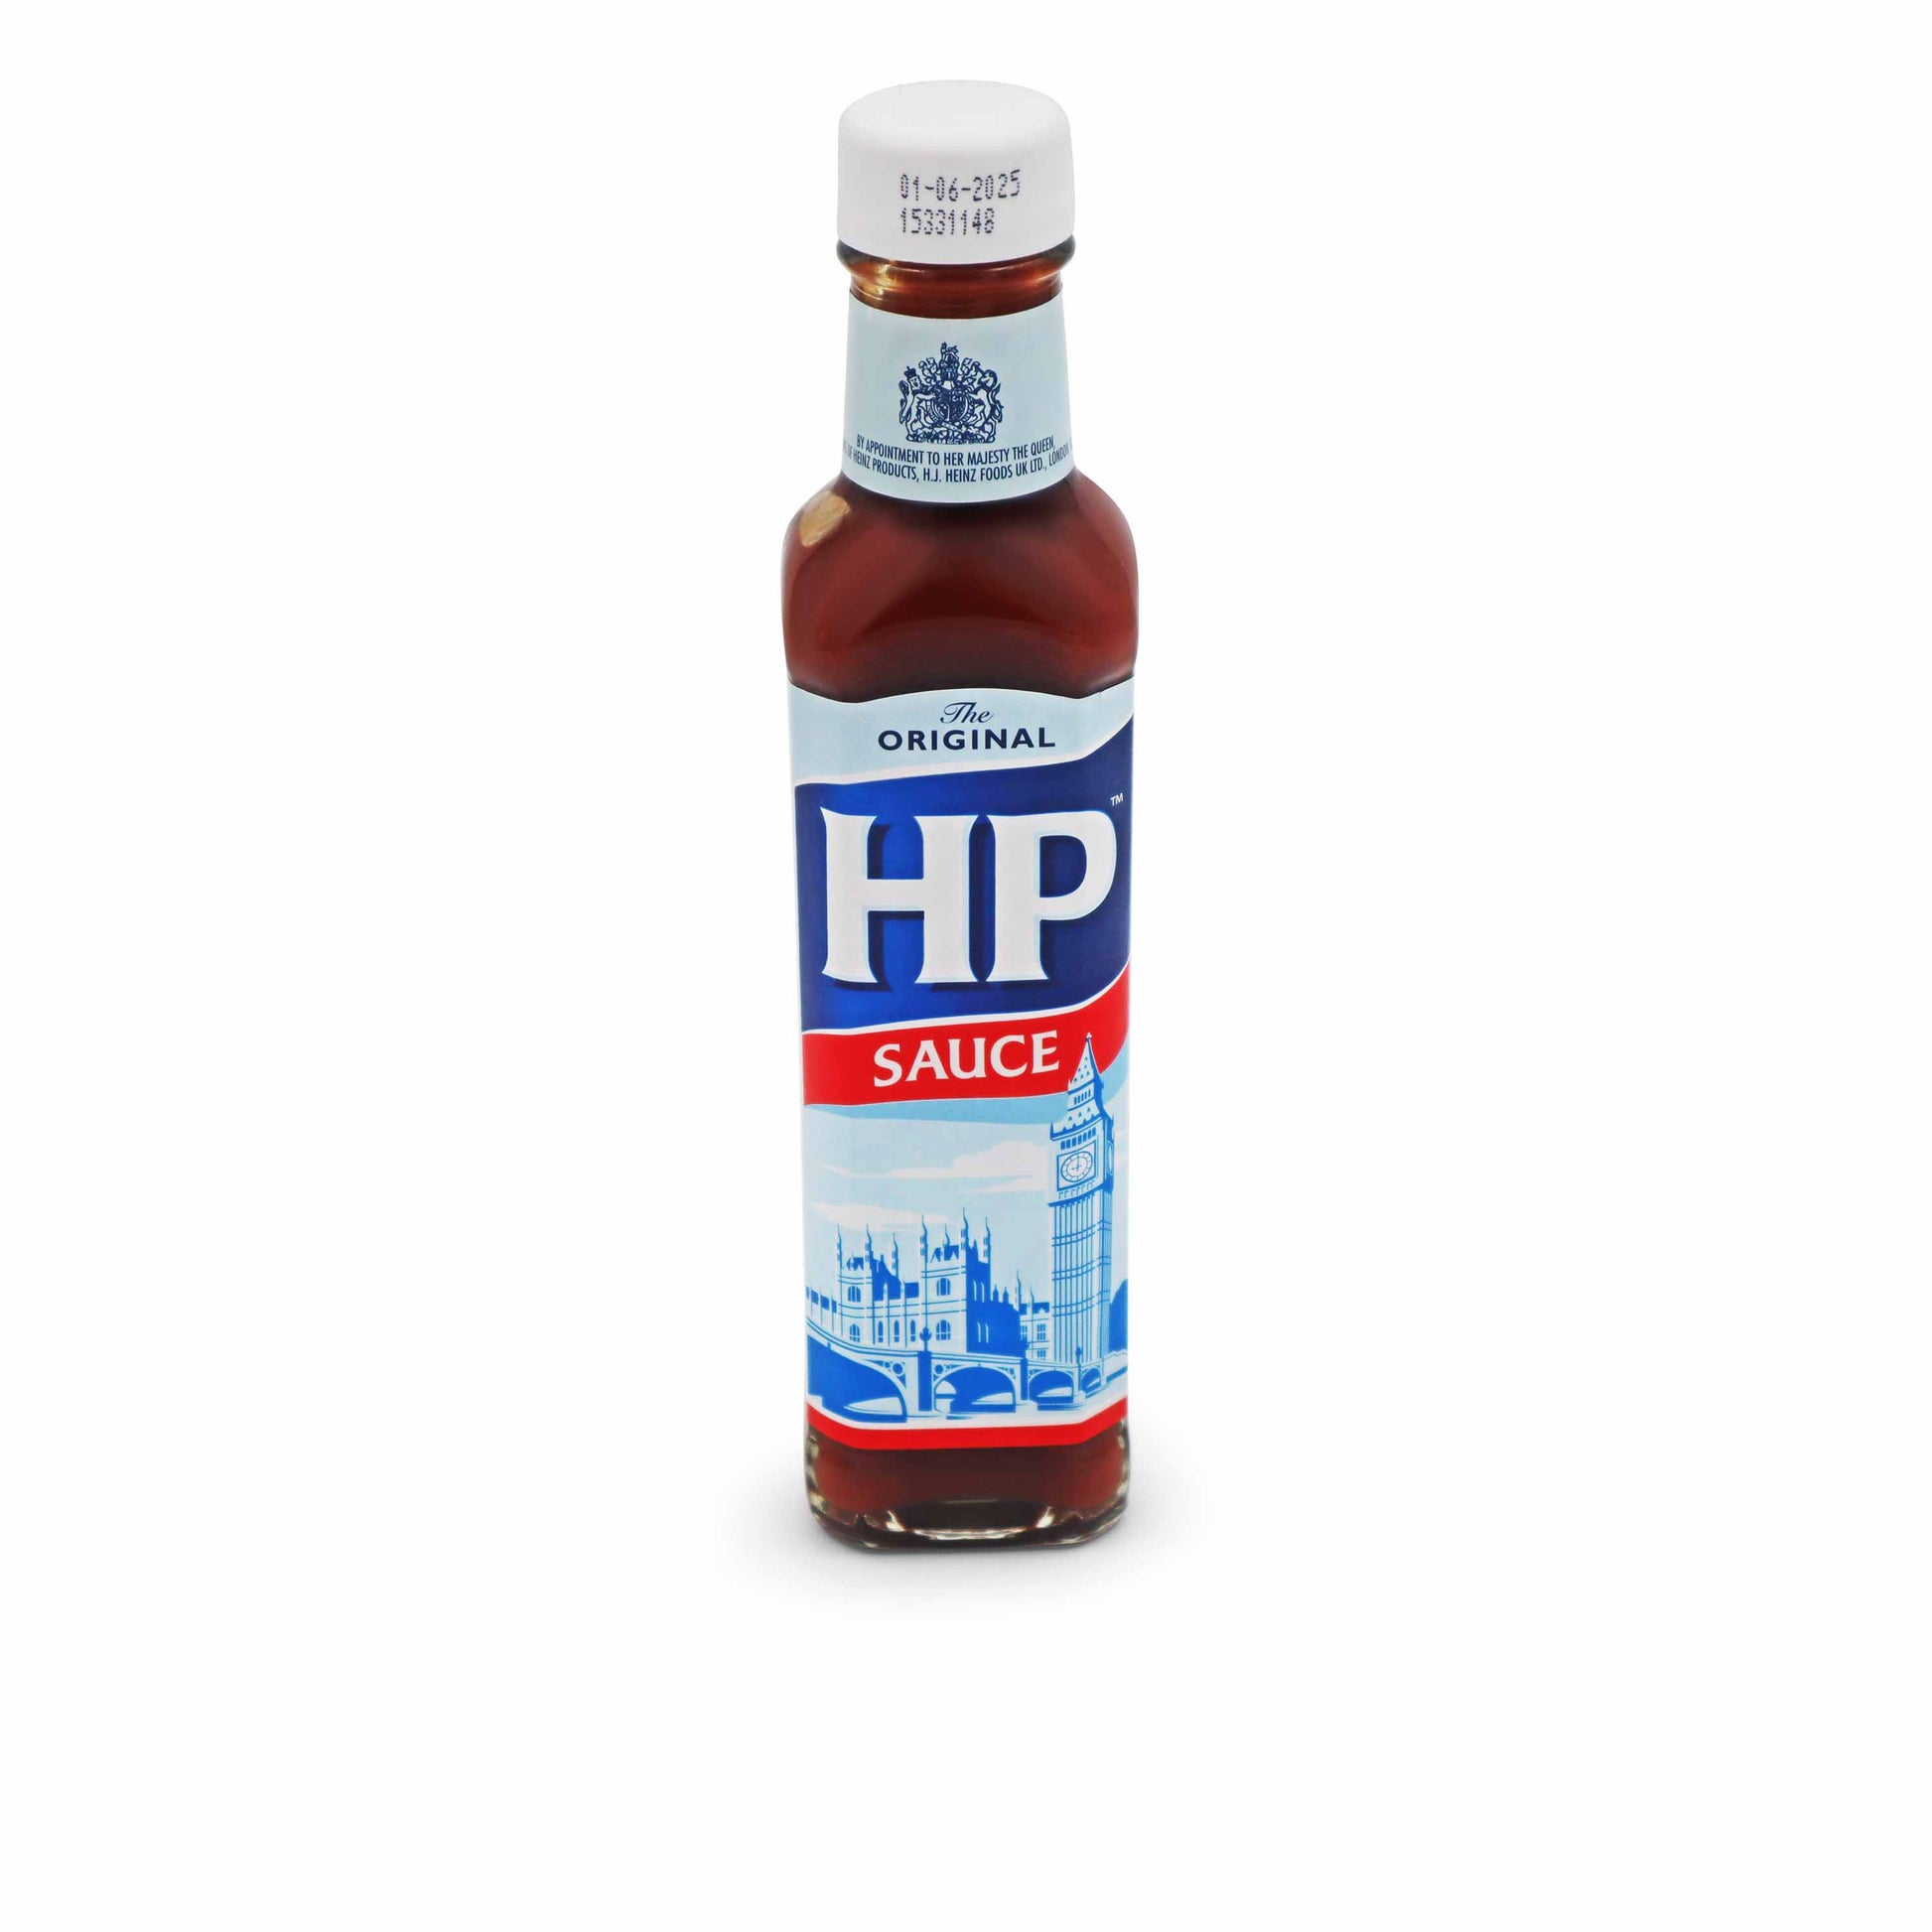 HP Brown Sauce 255g - Classic British Sauce - British Snacks